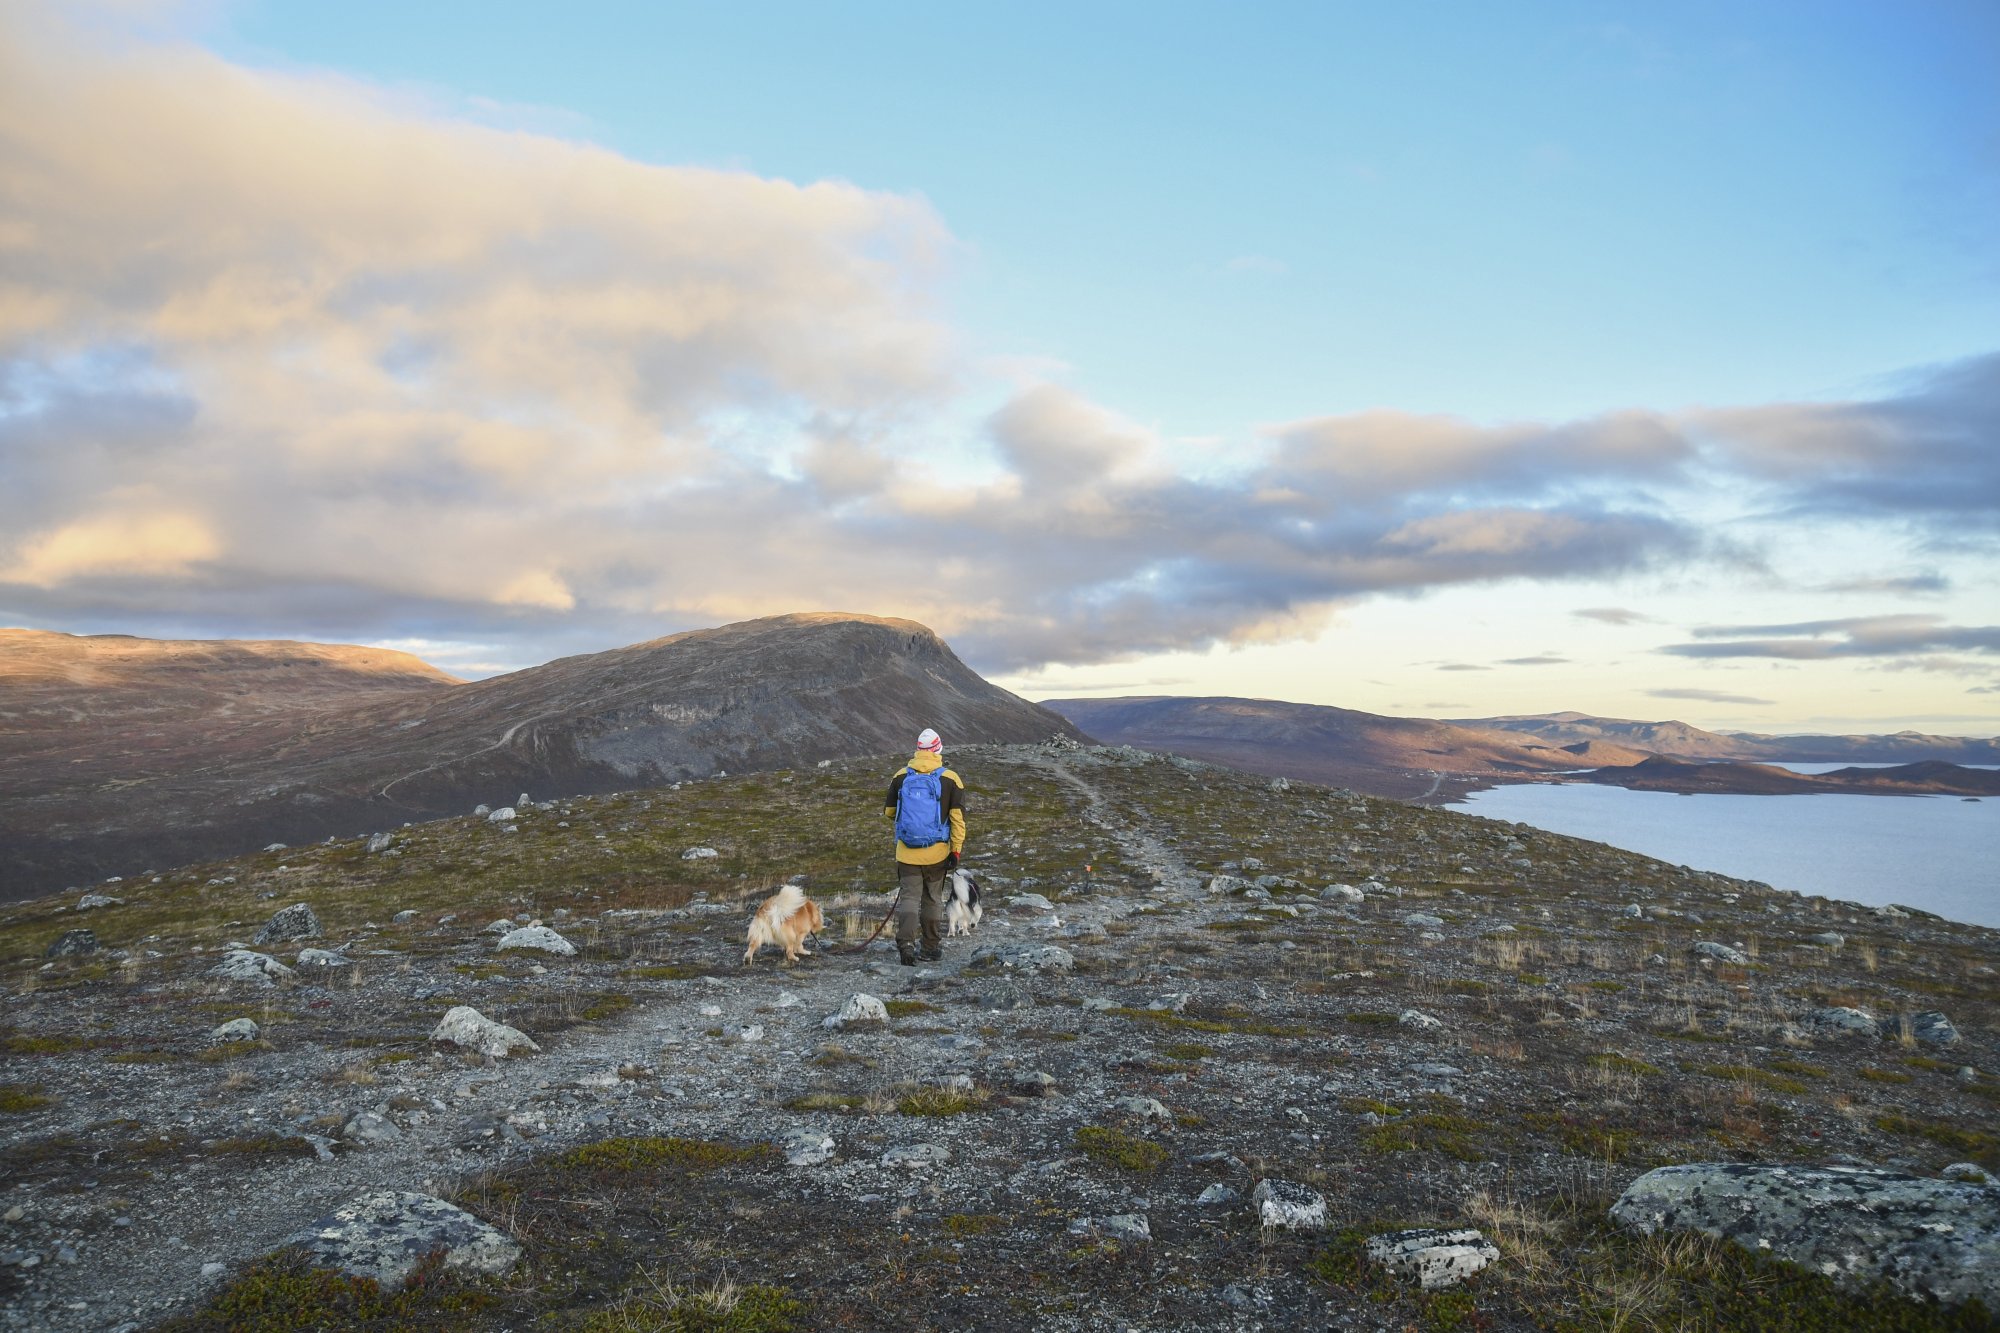 Mies ja kaksi koiraa kävelevät Mallan luonnonpuiston polulla taustallaan Saana tunturi ja Kilpisjärvi